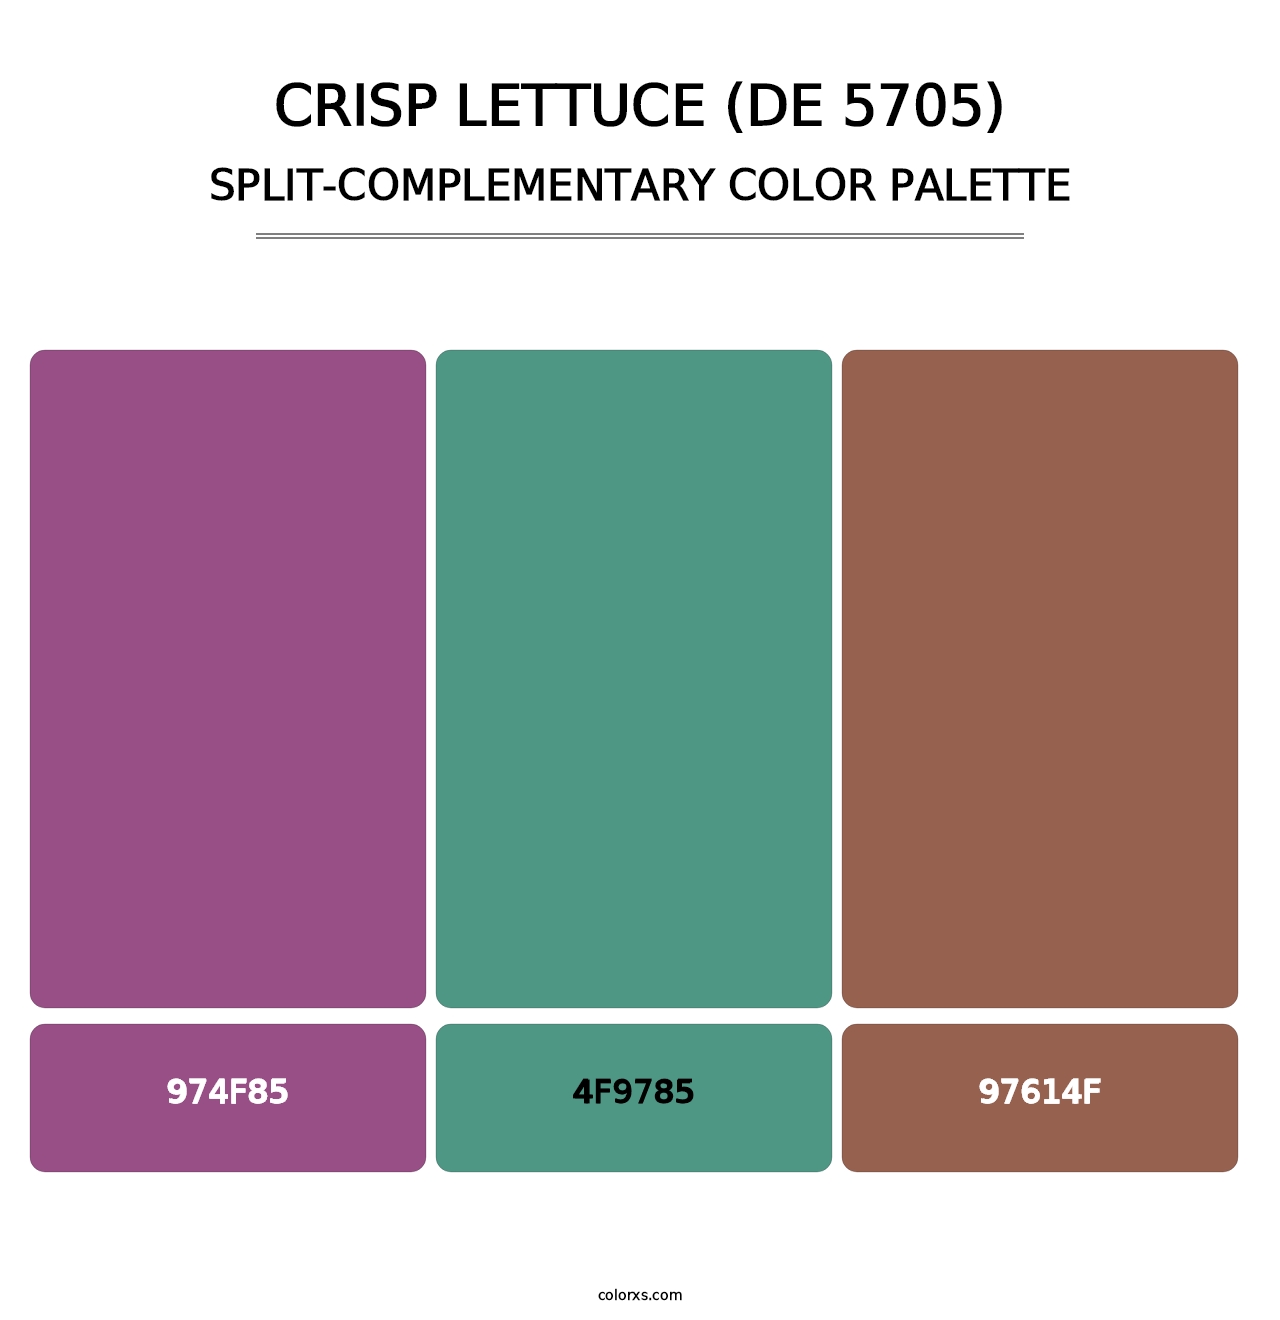 Crisp Lettuce (DE 5705) - Split-Complementary Color Palette